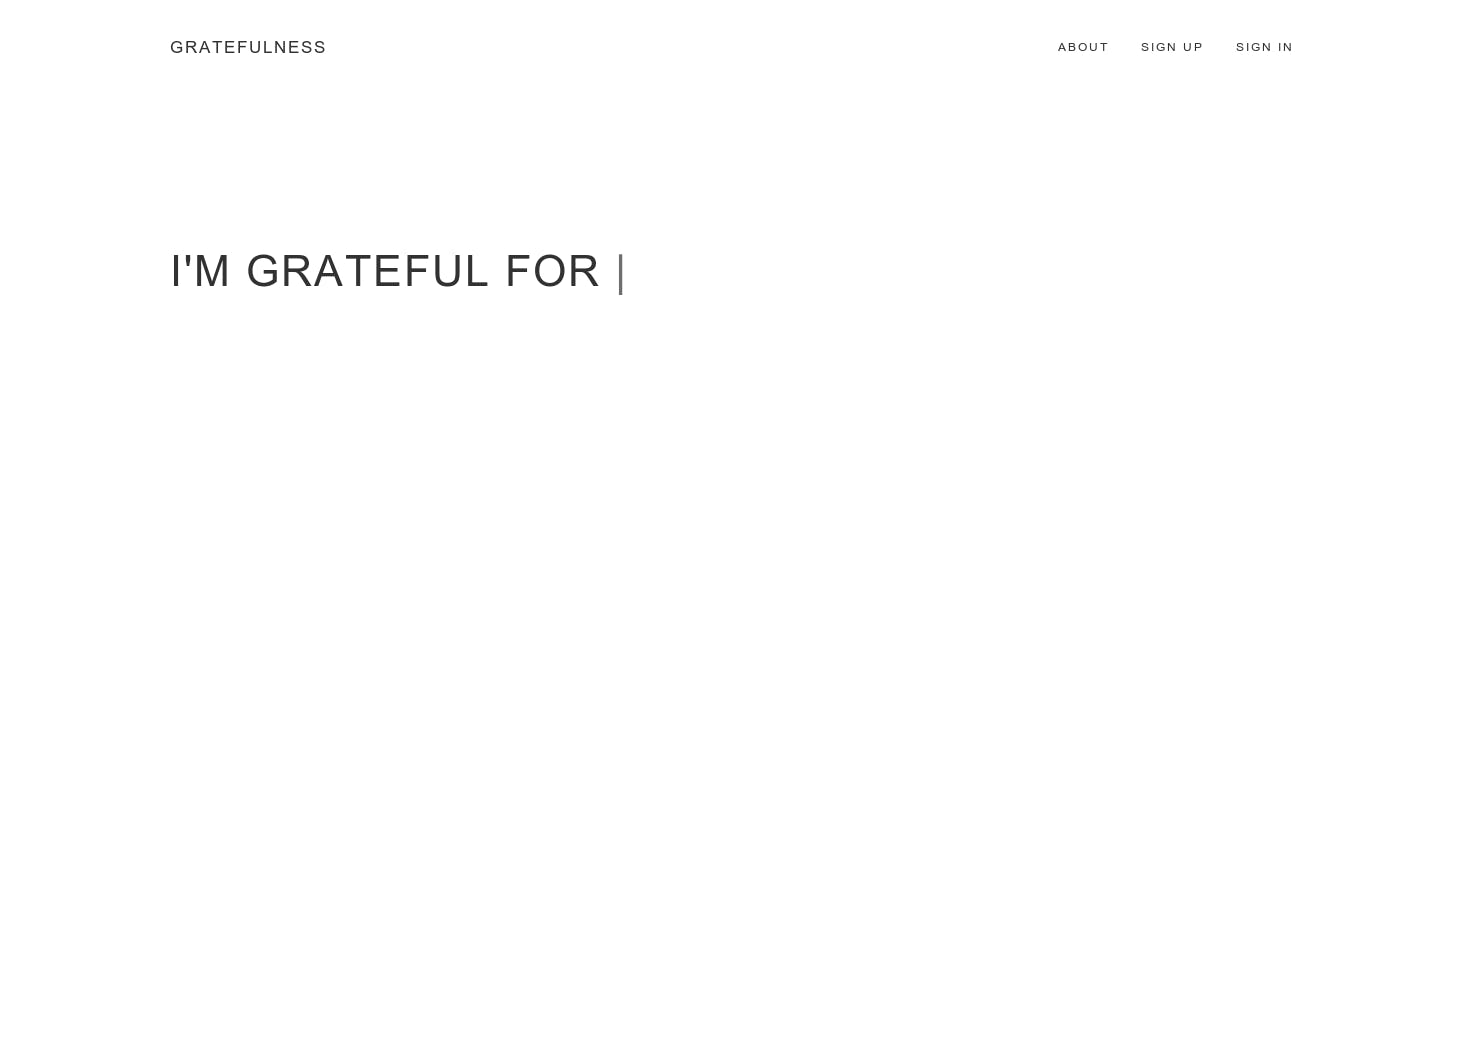 Gratefulness media 3